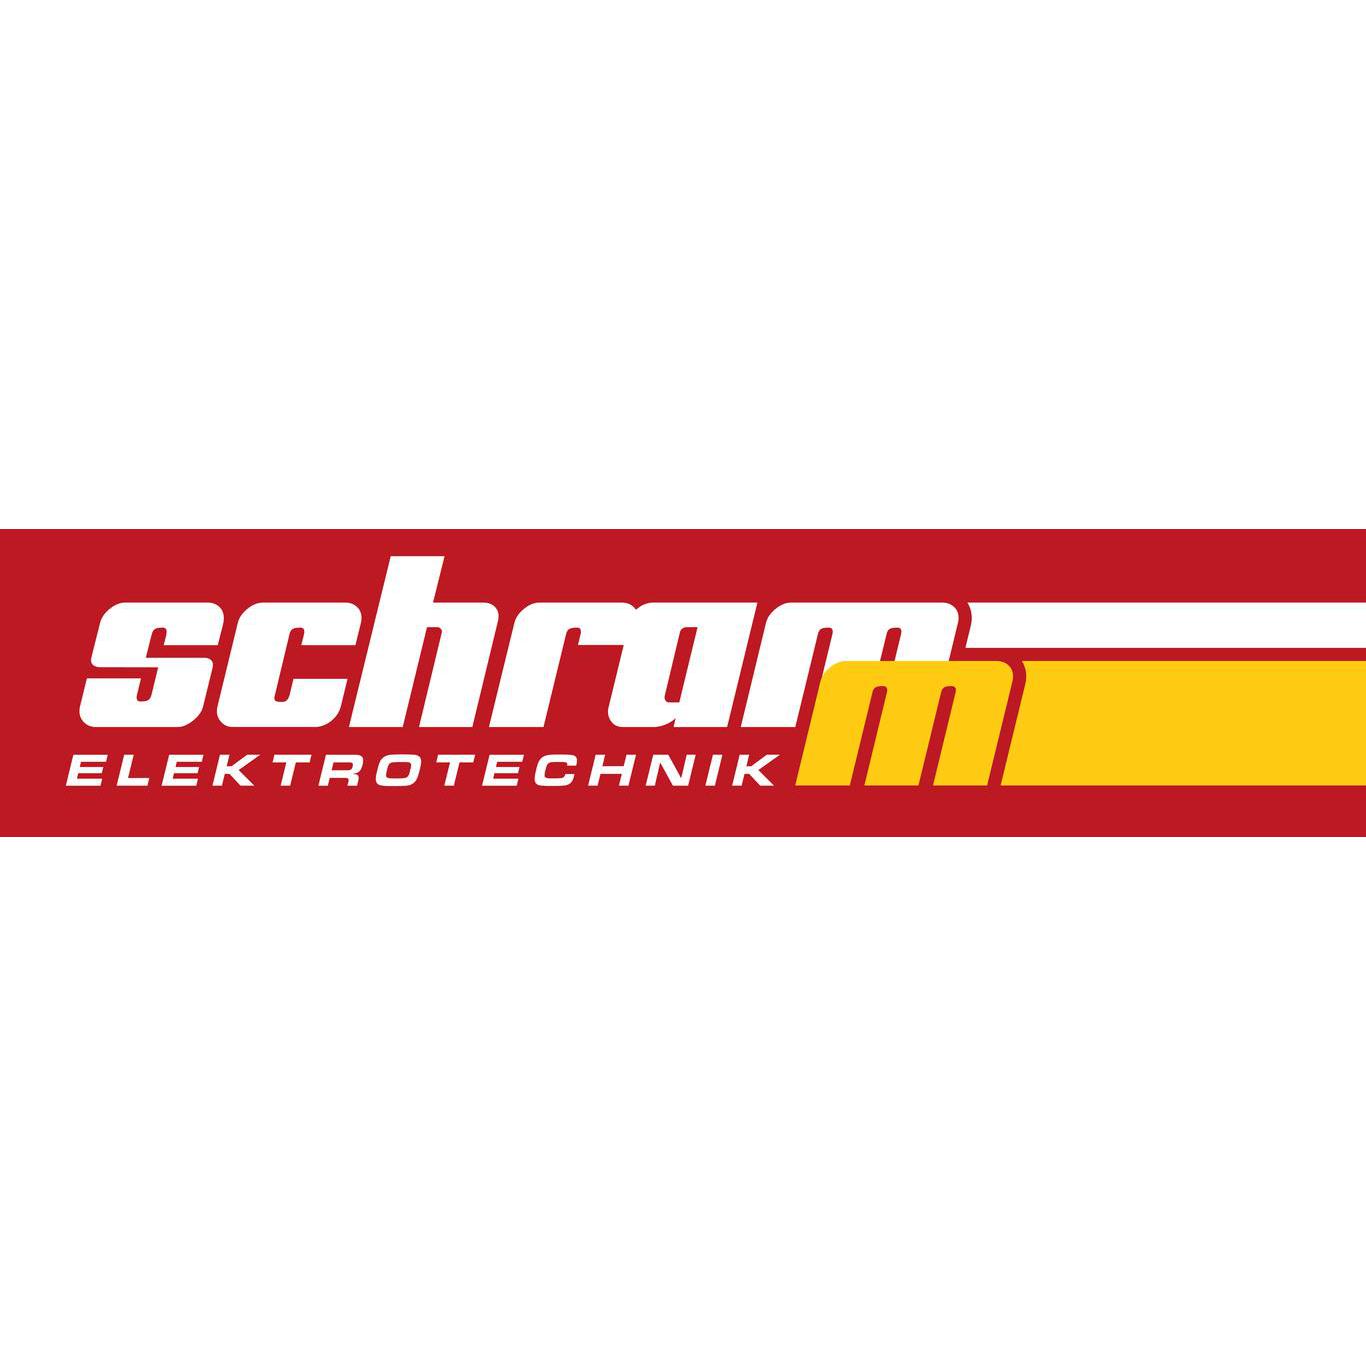 Elektrotechnik Schramm in Bornheim im Rheinland - Logo